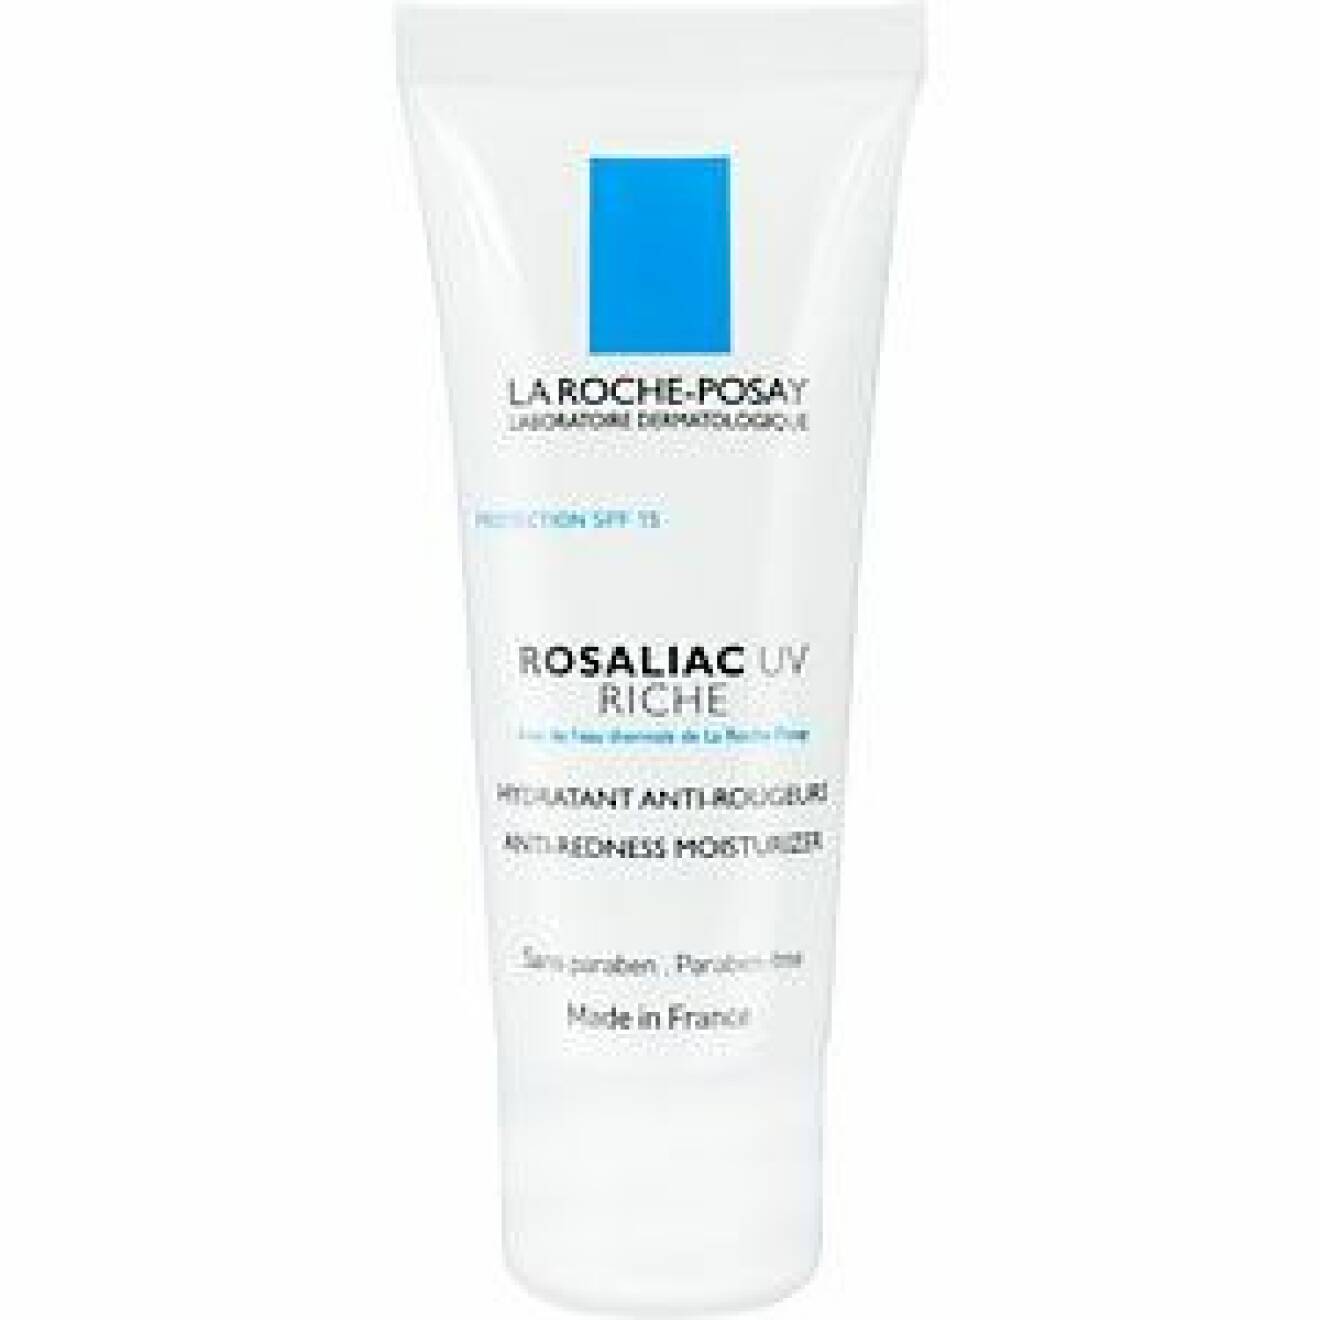 En bild på produkten La Roche-Posay – Rosaliac UV Riche, en ansiktskräm för dig med torr hy. 